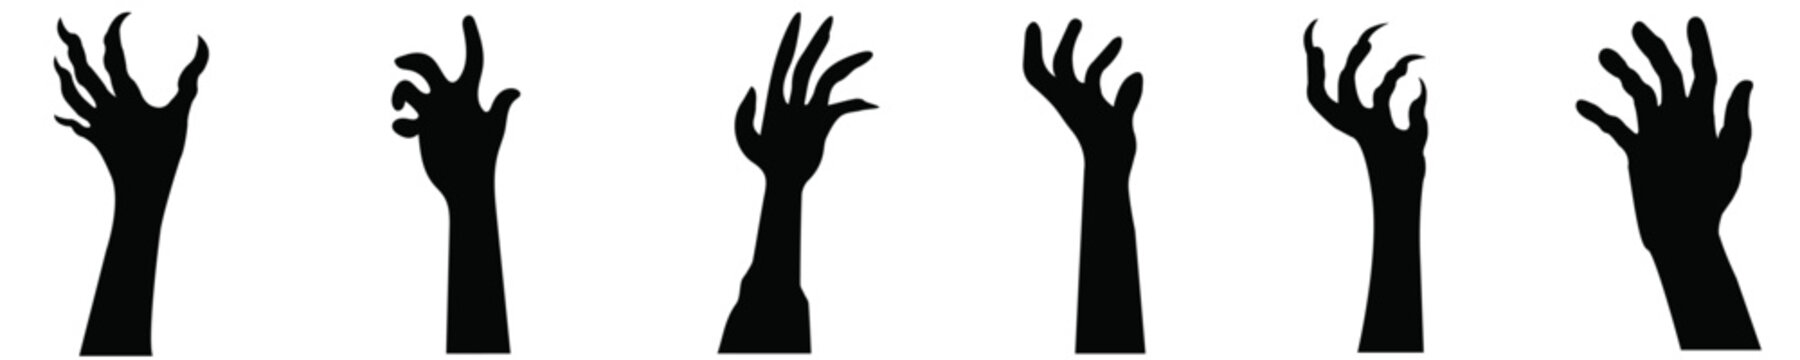 Black zombie hands halloween set, Halloween zombie hands Vector, Spooky black zombie hands,  Halloween design elements, Zombie hands, Vector set of black zombie hands, Horrible hands, Halloween hands